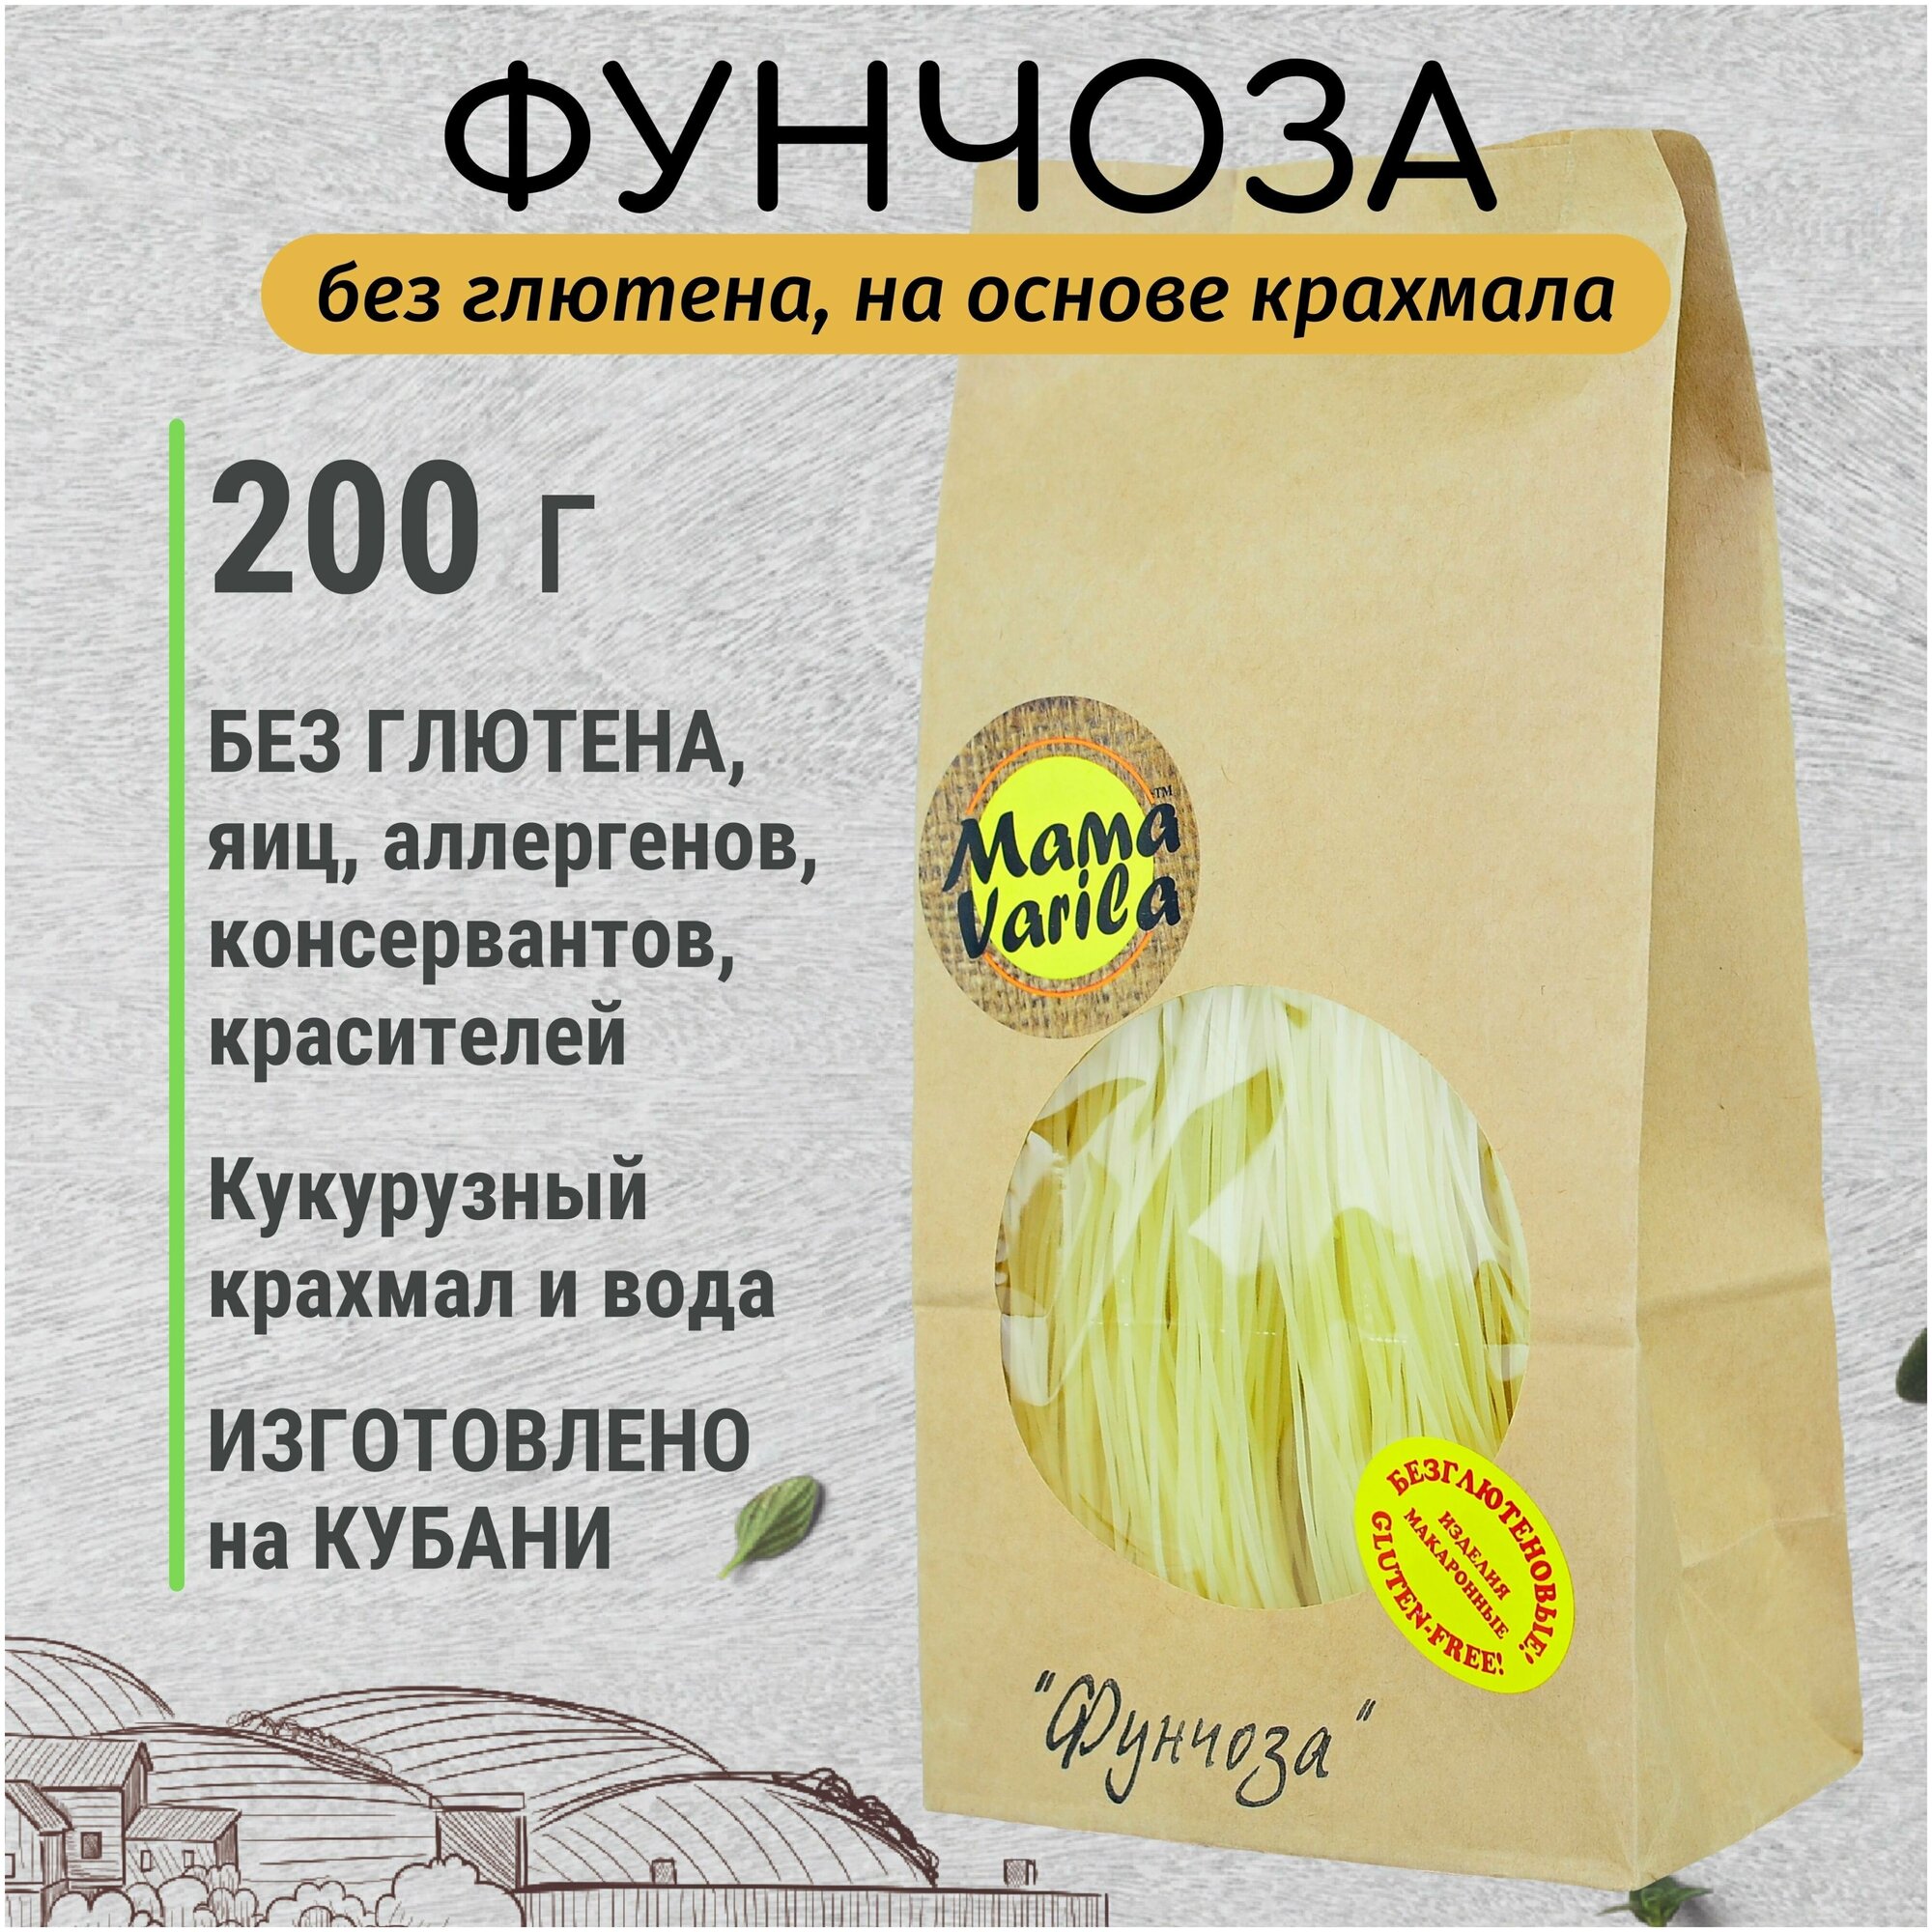 Вермишель Фунчоза безглютеновая, макаронное изделие Mama Varila - 200 г, не содержит глютен, красители, аллергены, диетическая, постный продукт